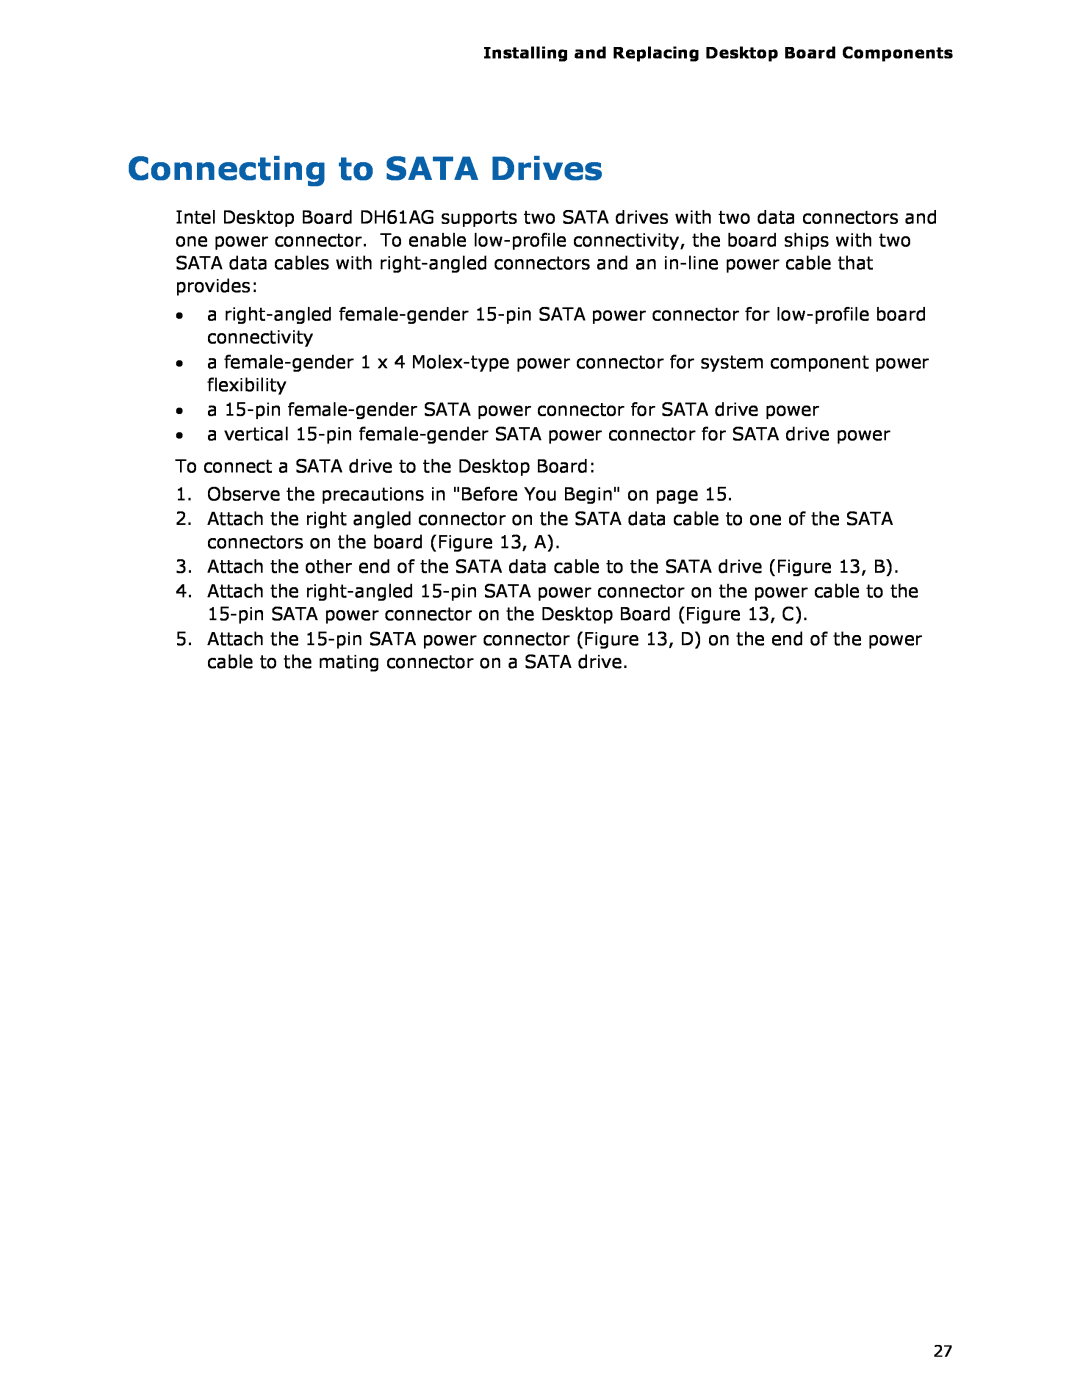 Intel BOXDH61AG manual Connecting to SATA Drives 